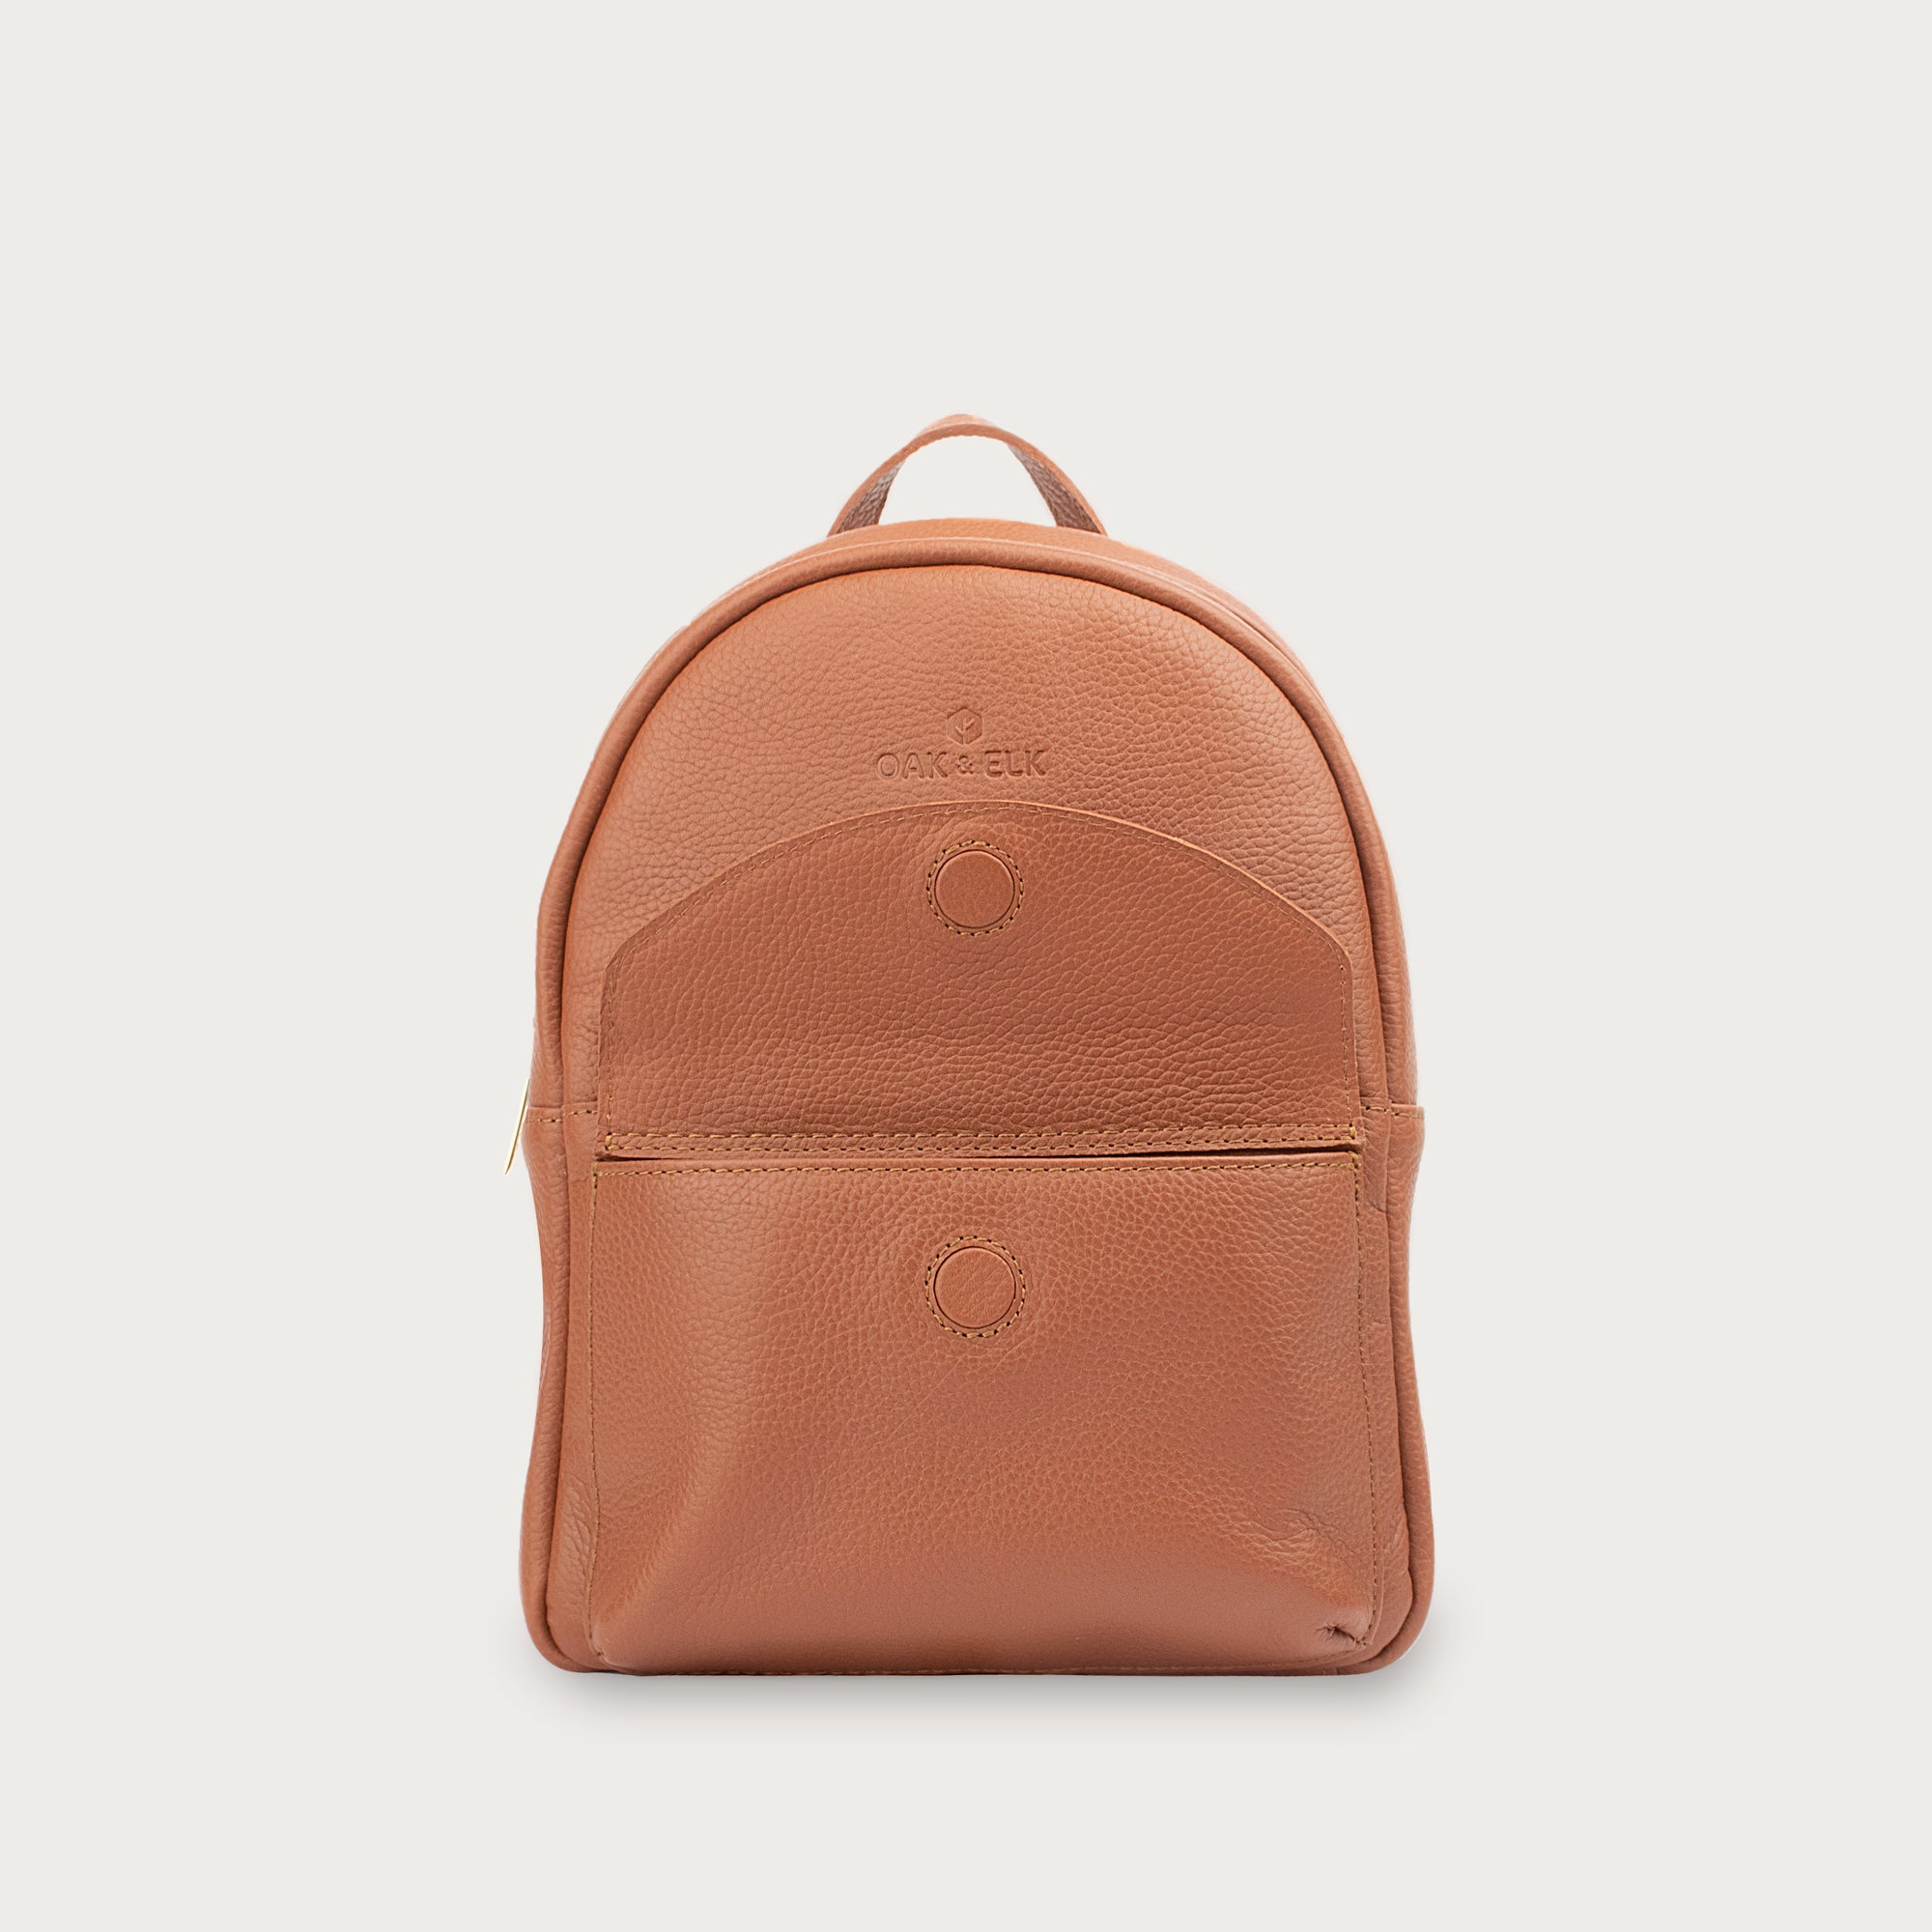 Rosetti Backpack Purse Beige/Tan | Boho backpack purse, Backpack purse,  Faux leather backpack